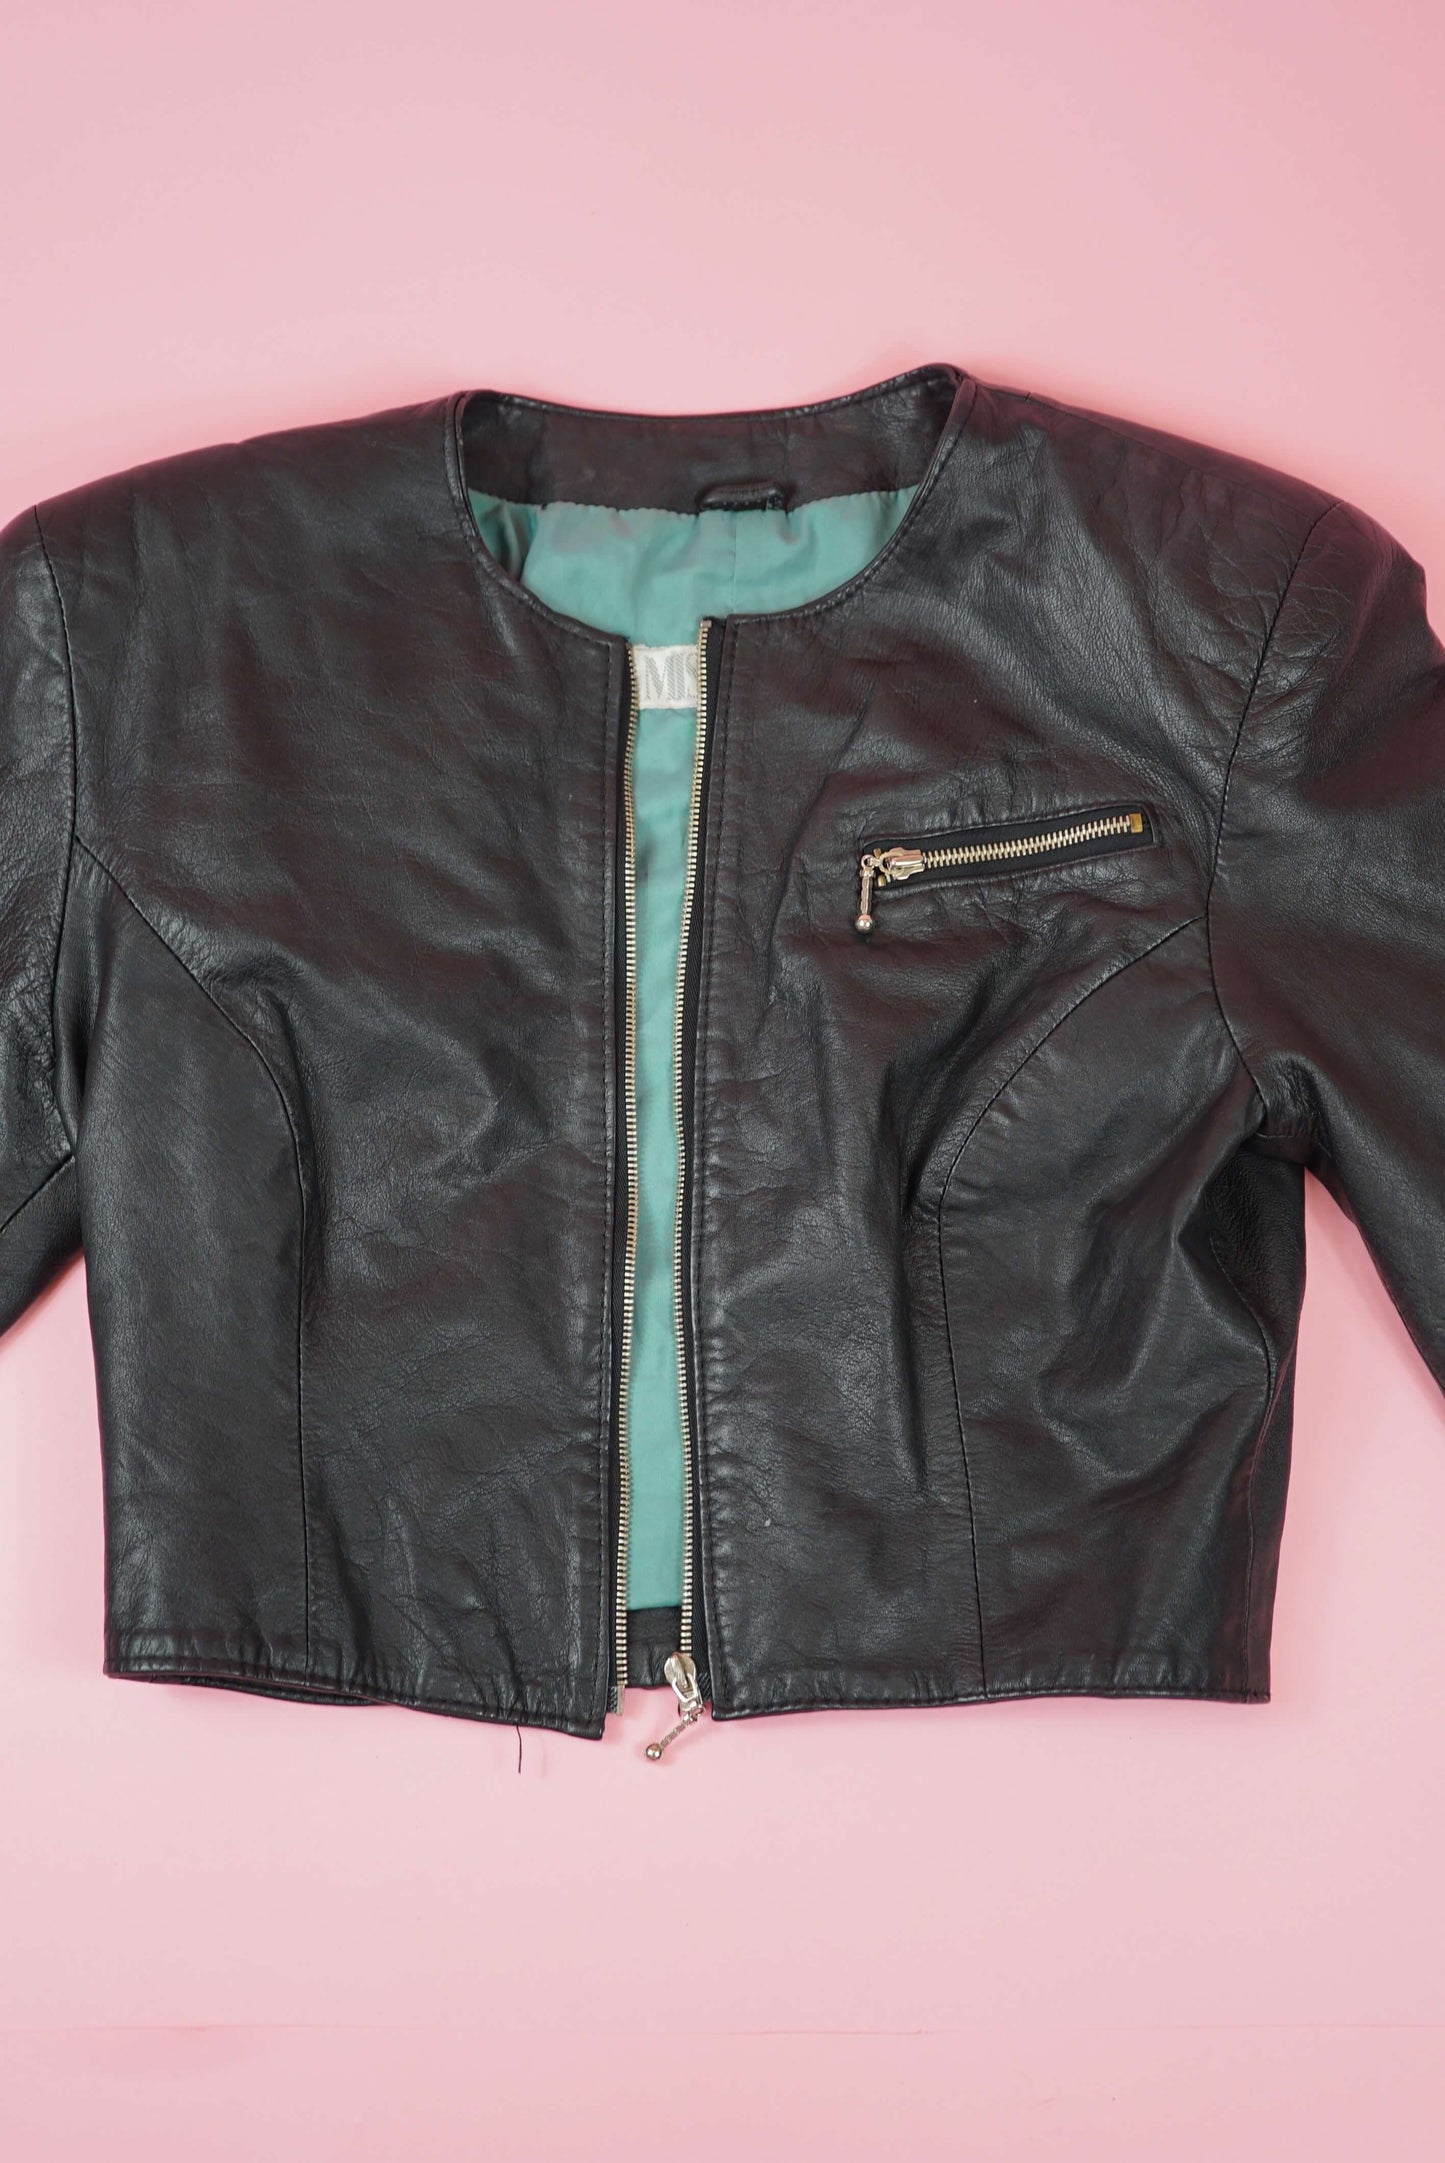 Cropped Boxy Black Vintage Leather Jacket Collarless UK Size 10-12/ EU 38-40 Size M